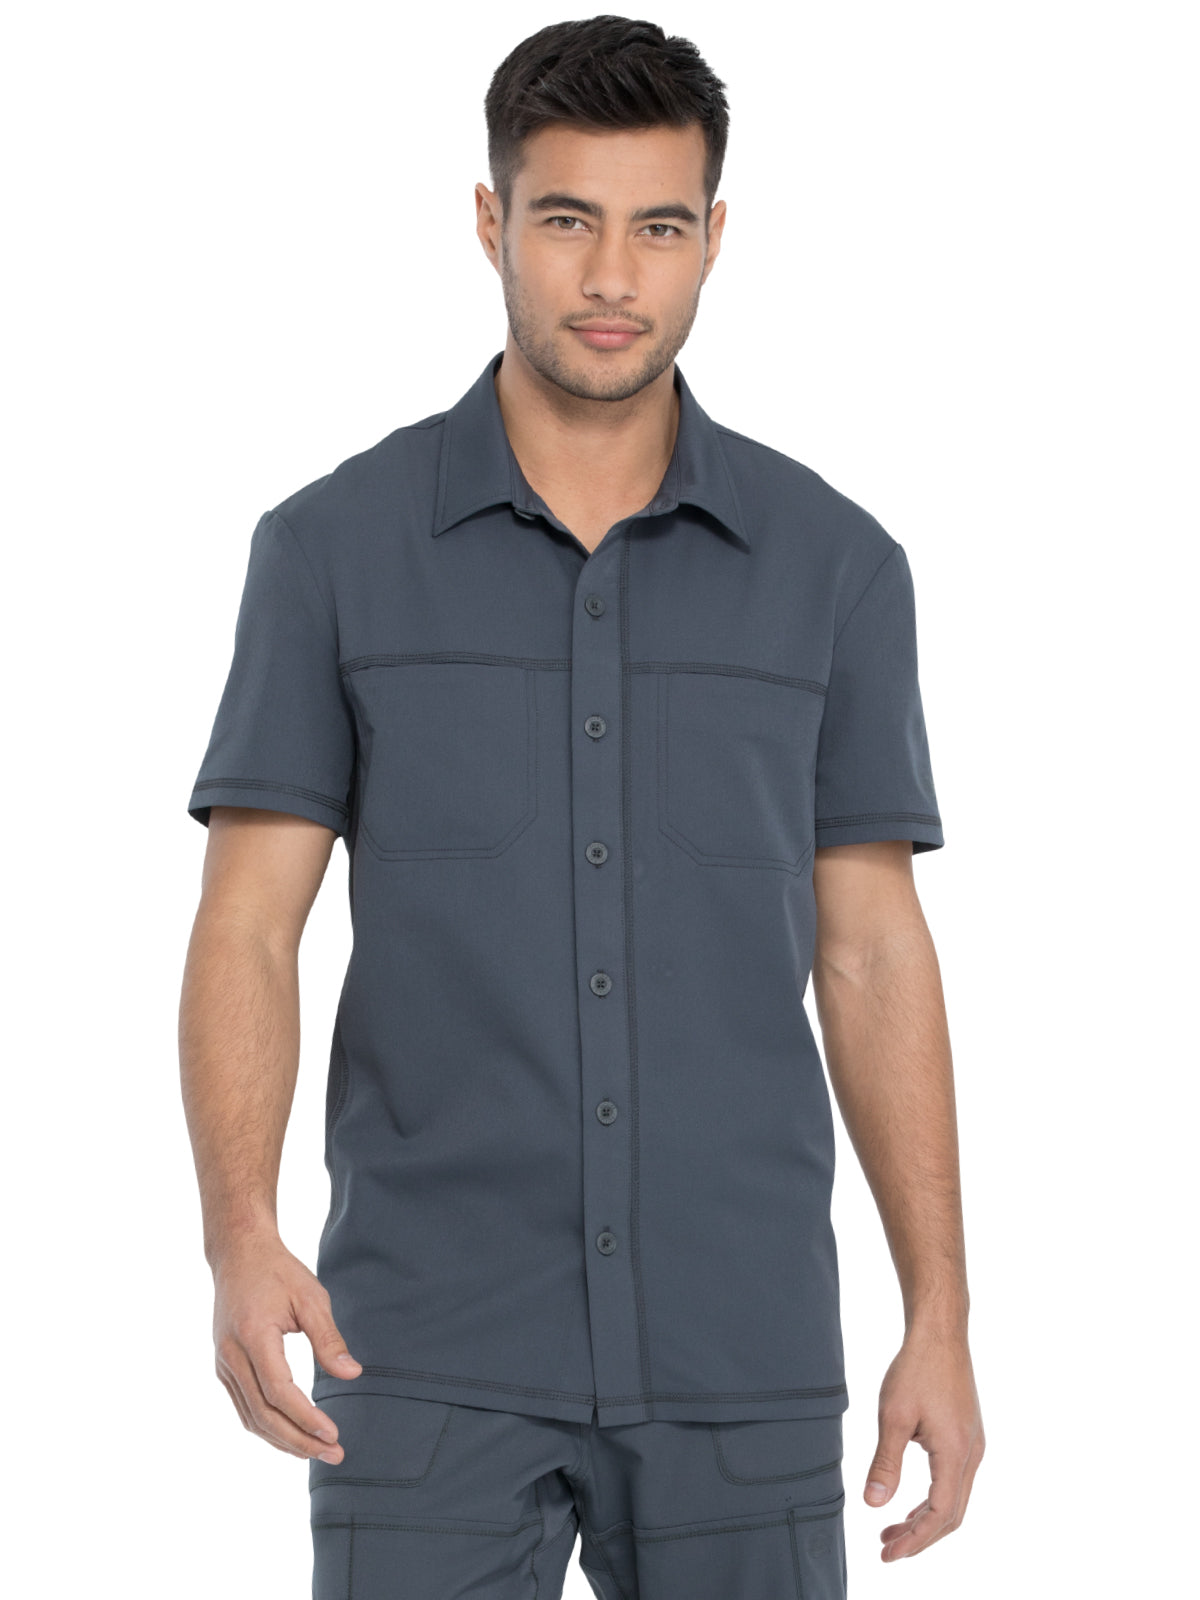 Men's Button Front Collar Shirt - DK820 - Pewter